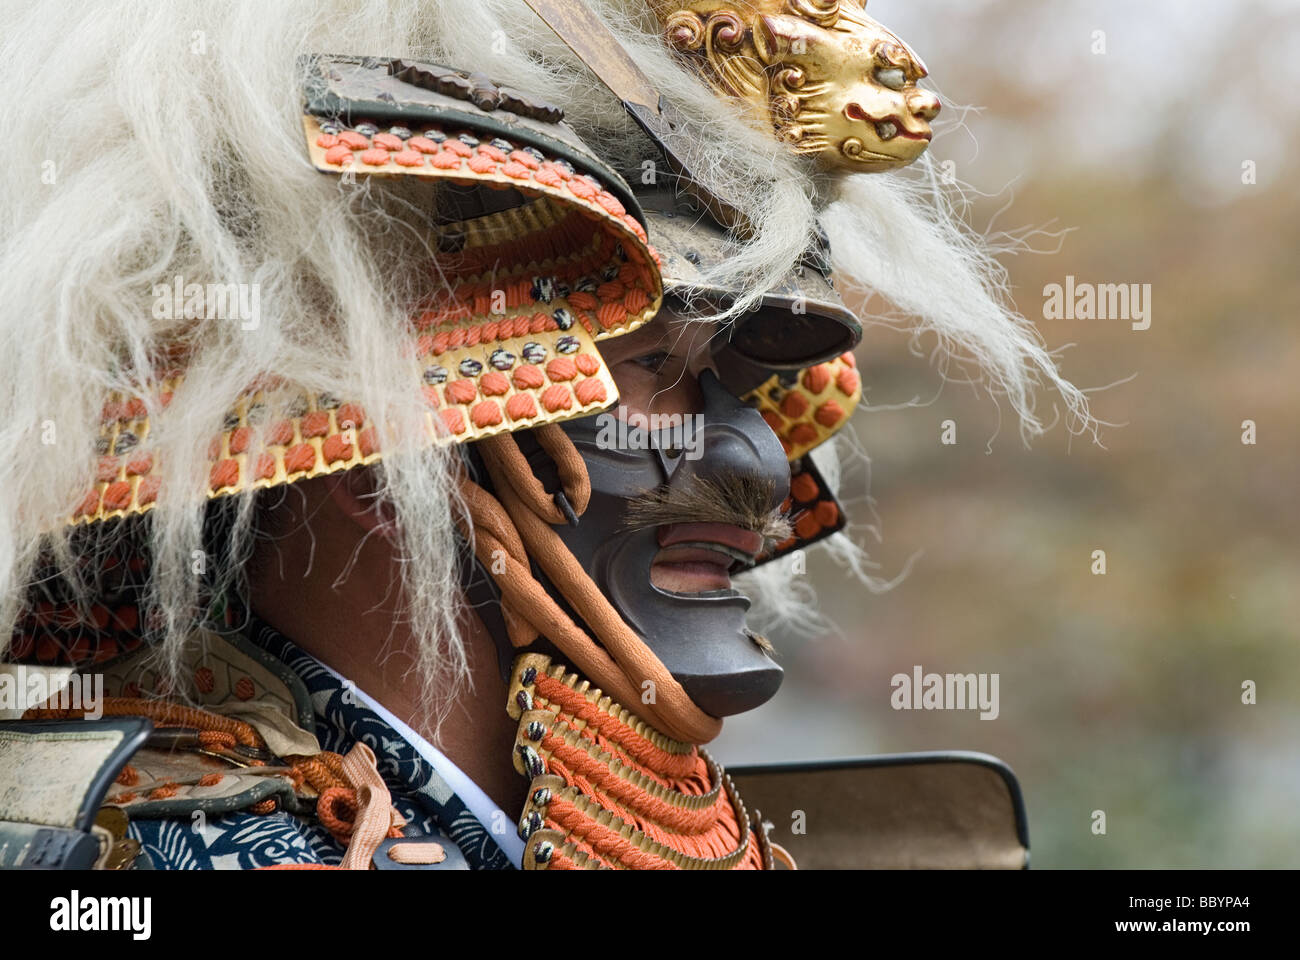 Mann gekleidet in voller Samurai-Rüstung komplett mit Kabuto Helm und Mempo Gesichtsmaske, den Feind einzuschüchtern Stockfoto